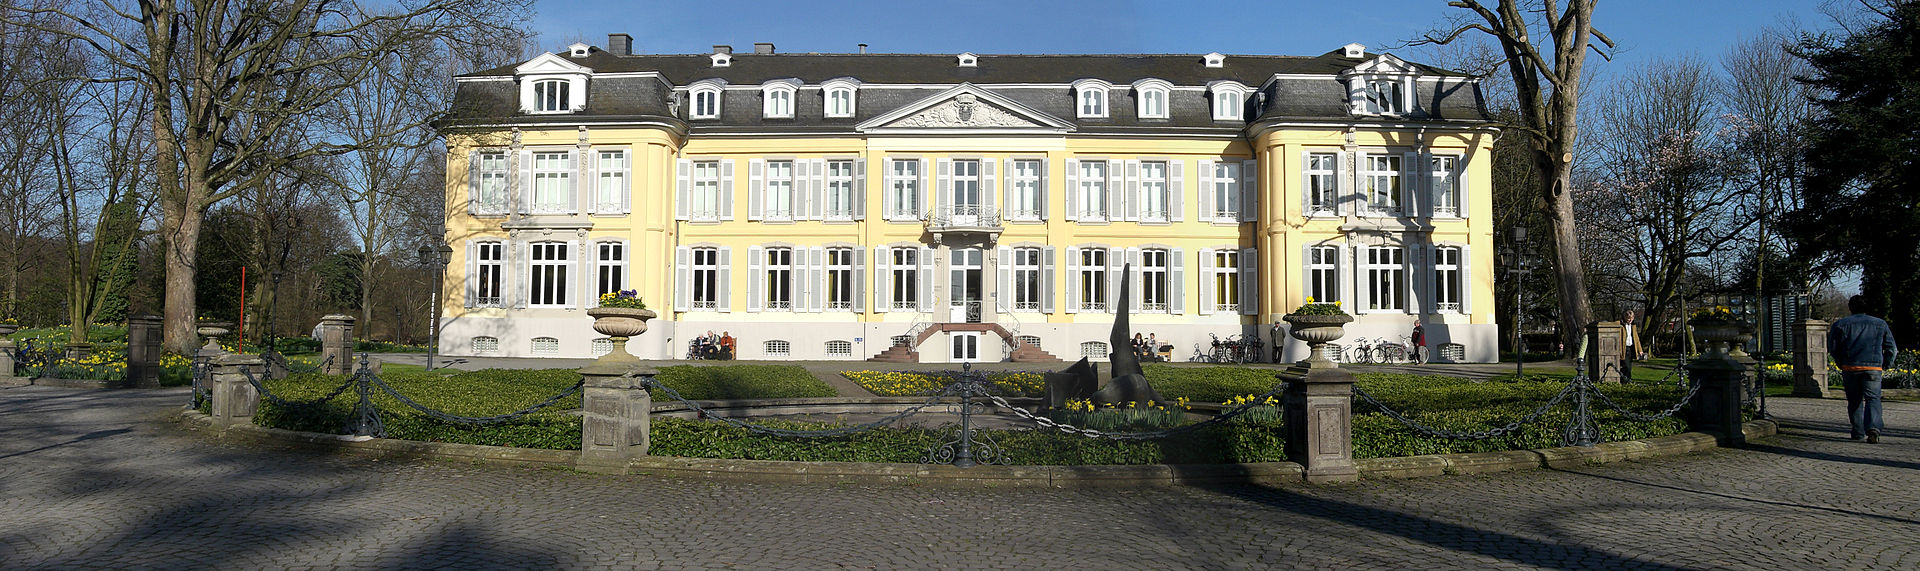 Bild Städtisches Museum Leverkusen Schloss Morsbroich